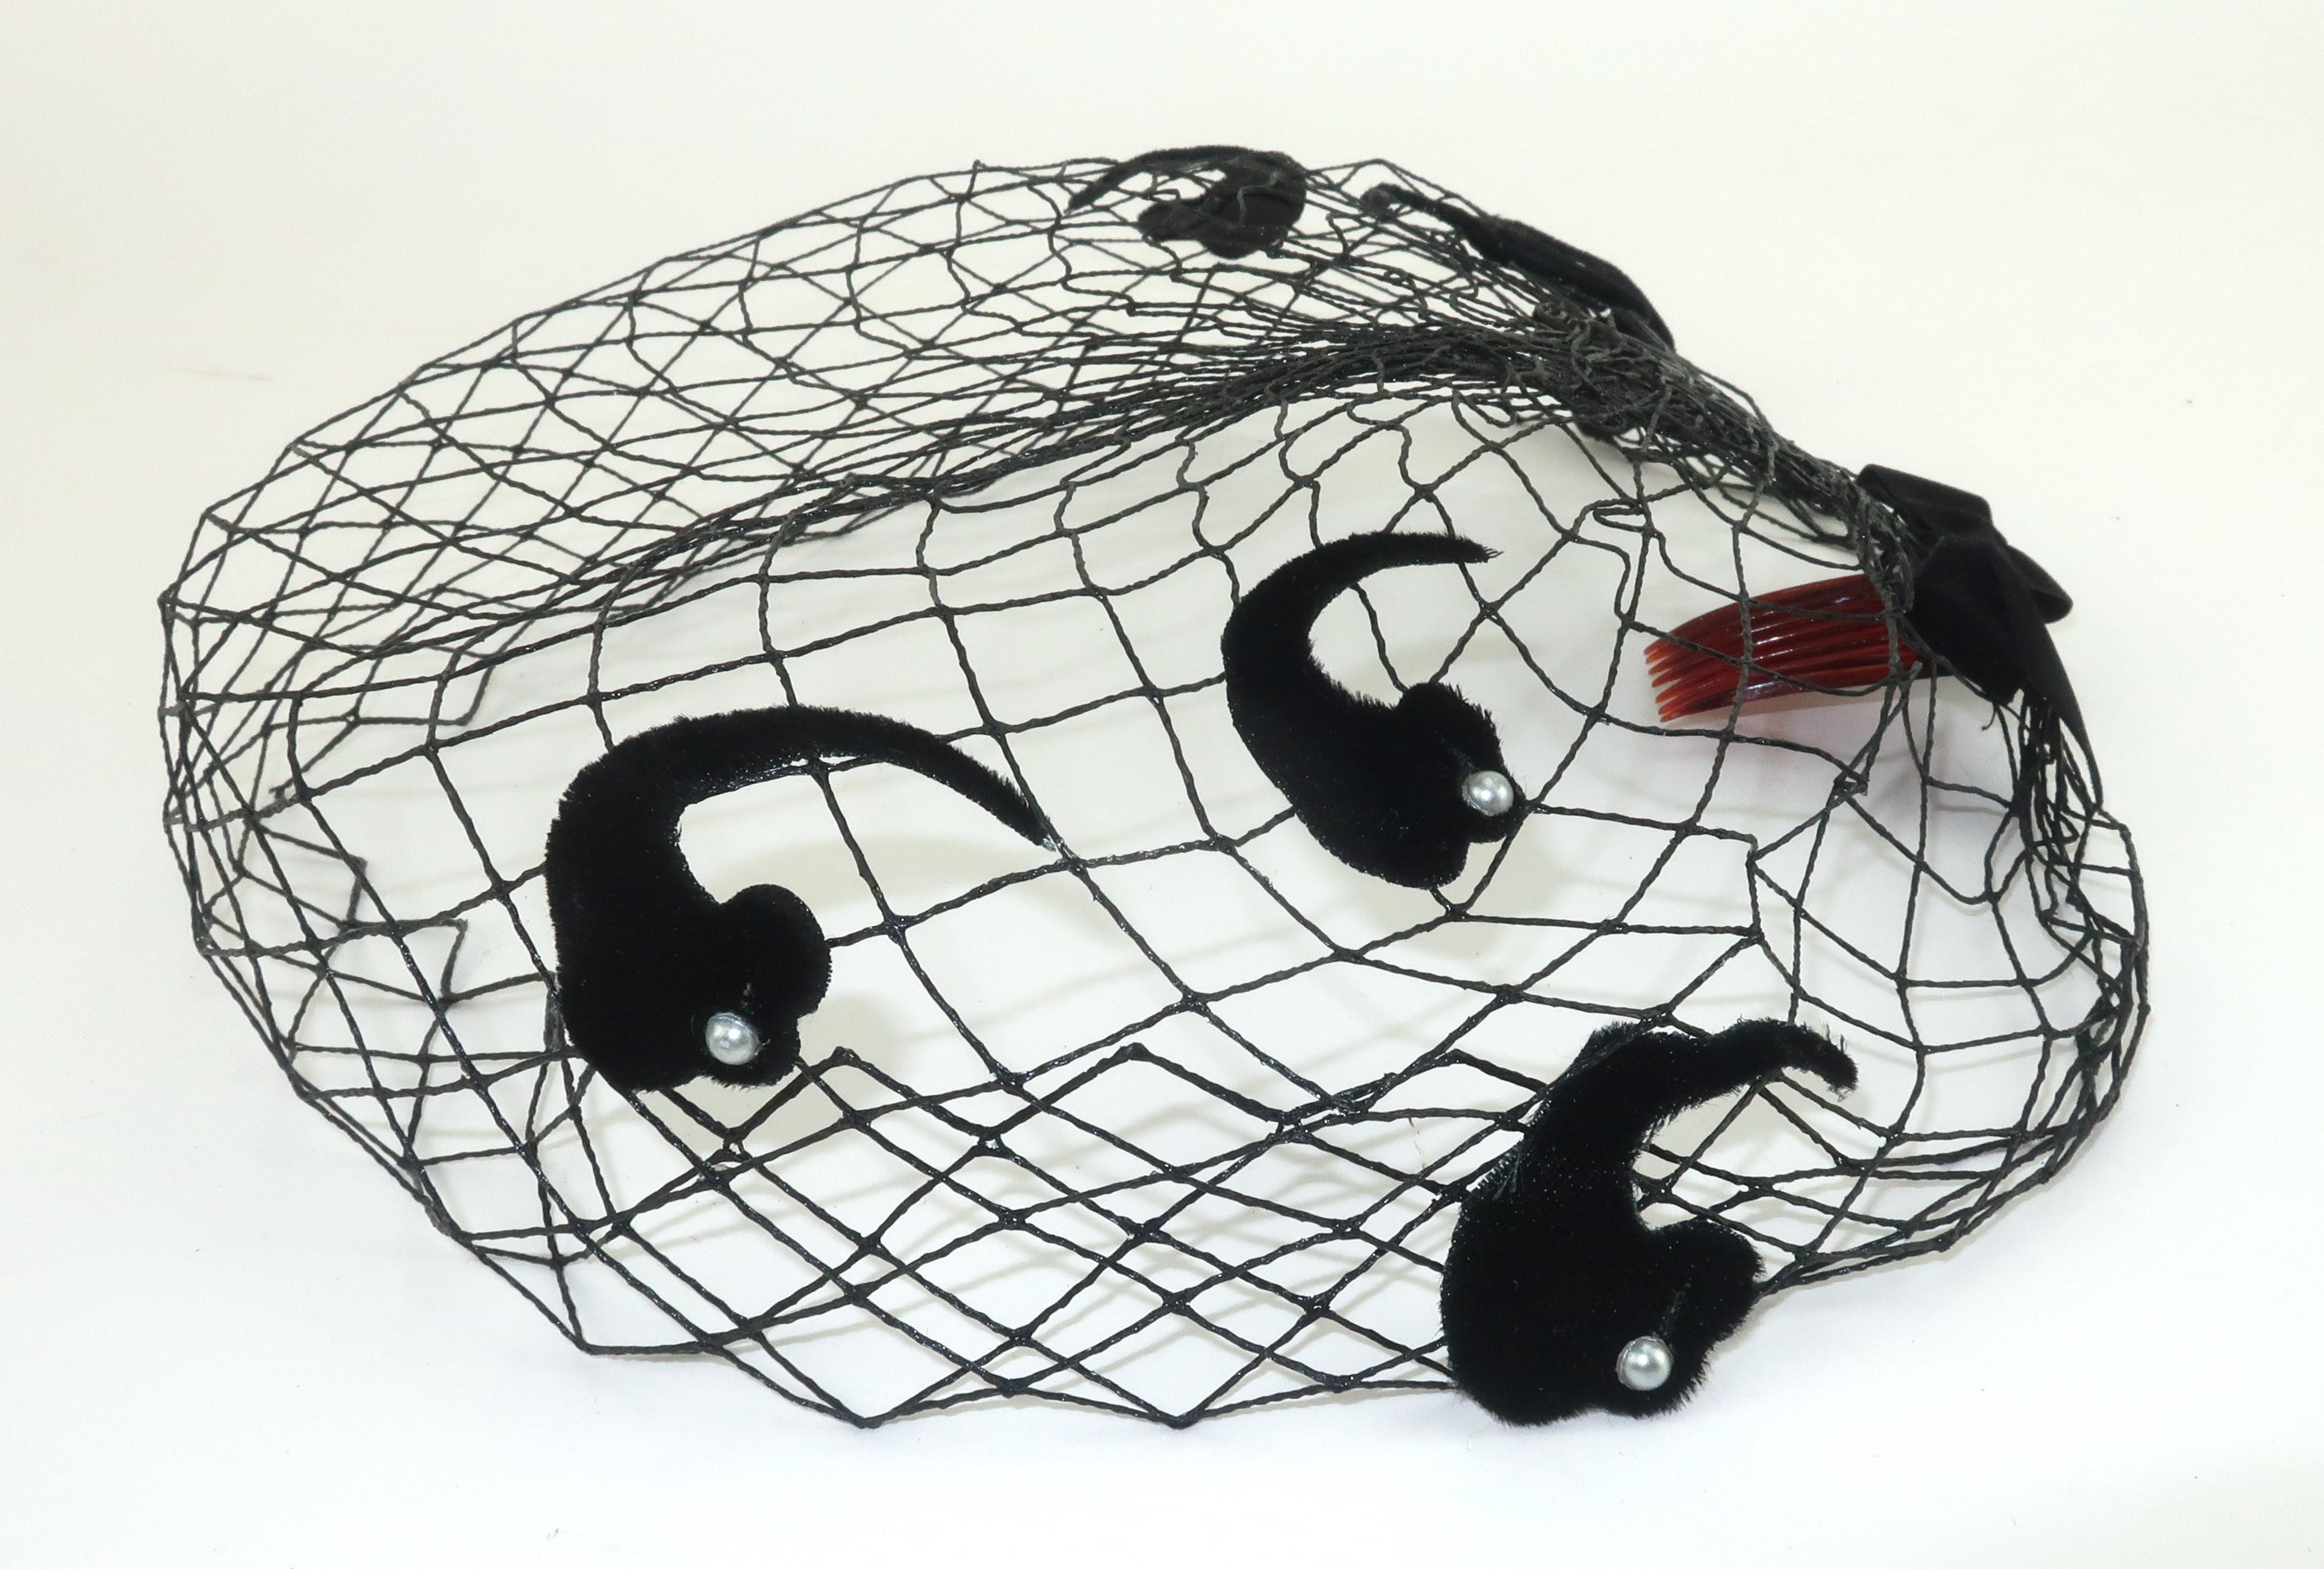 Voile en filet noir des années 1950 qui peut être porté seul ou associé à un chapeau.  Le corps en résille a une forme rigide froncée dans le dos par un nœud en velours et décoré d'ornements en velours en forme de cachemire accentués par des perles.